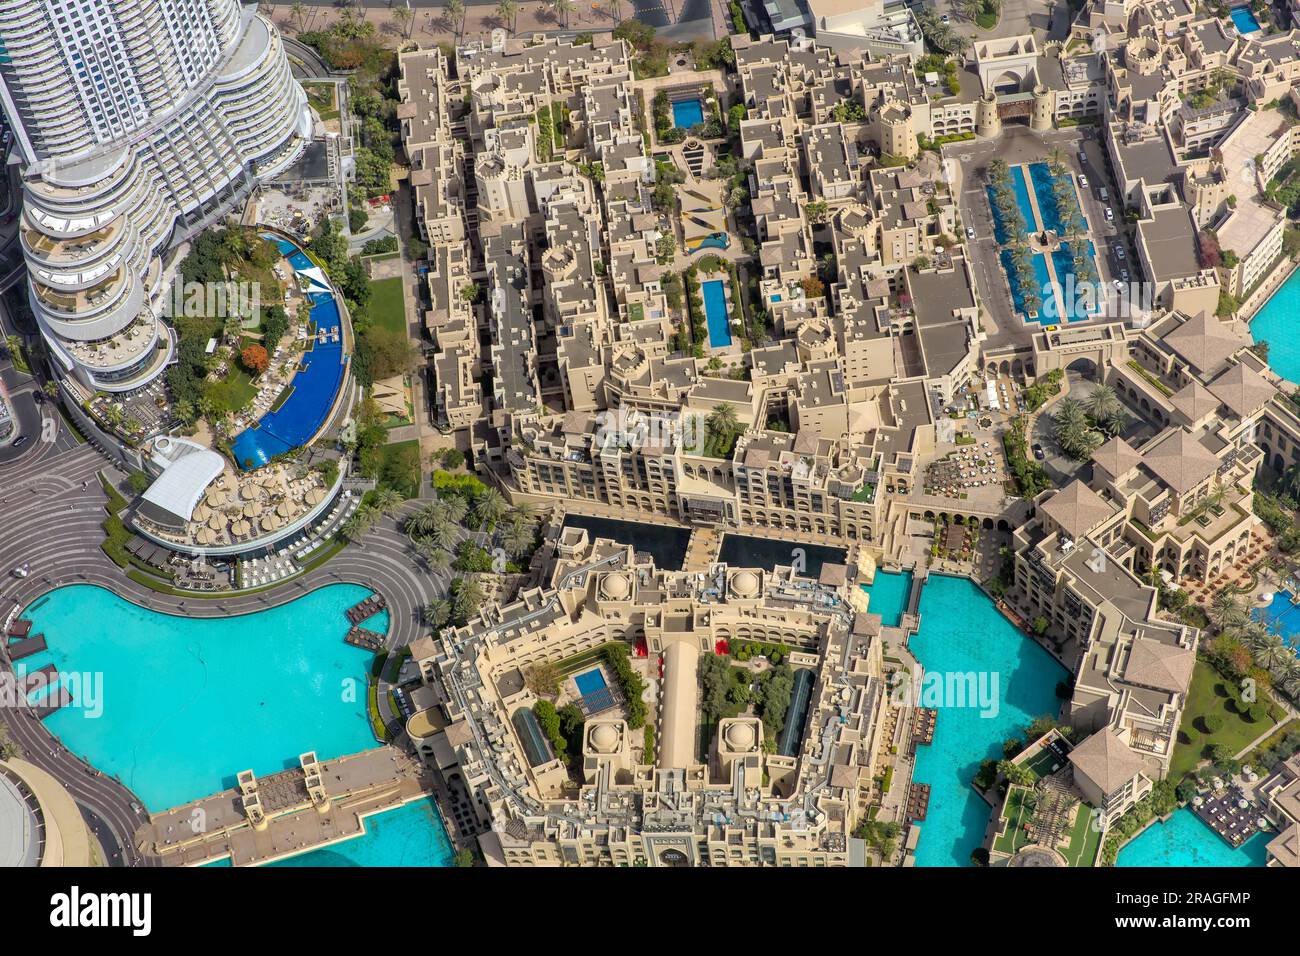 Dubai Fountain and Lake area viewed from Burj Khalifa Building, Dubai, UAE Stock Photo